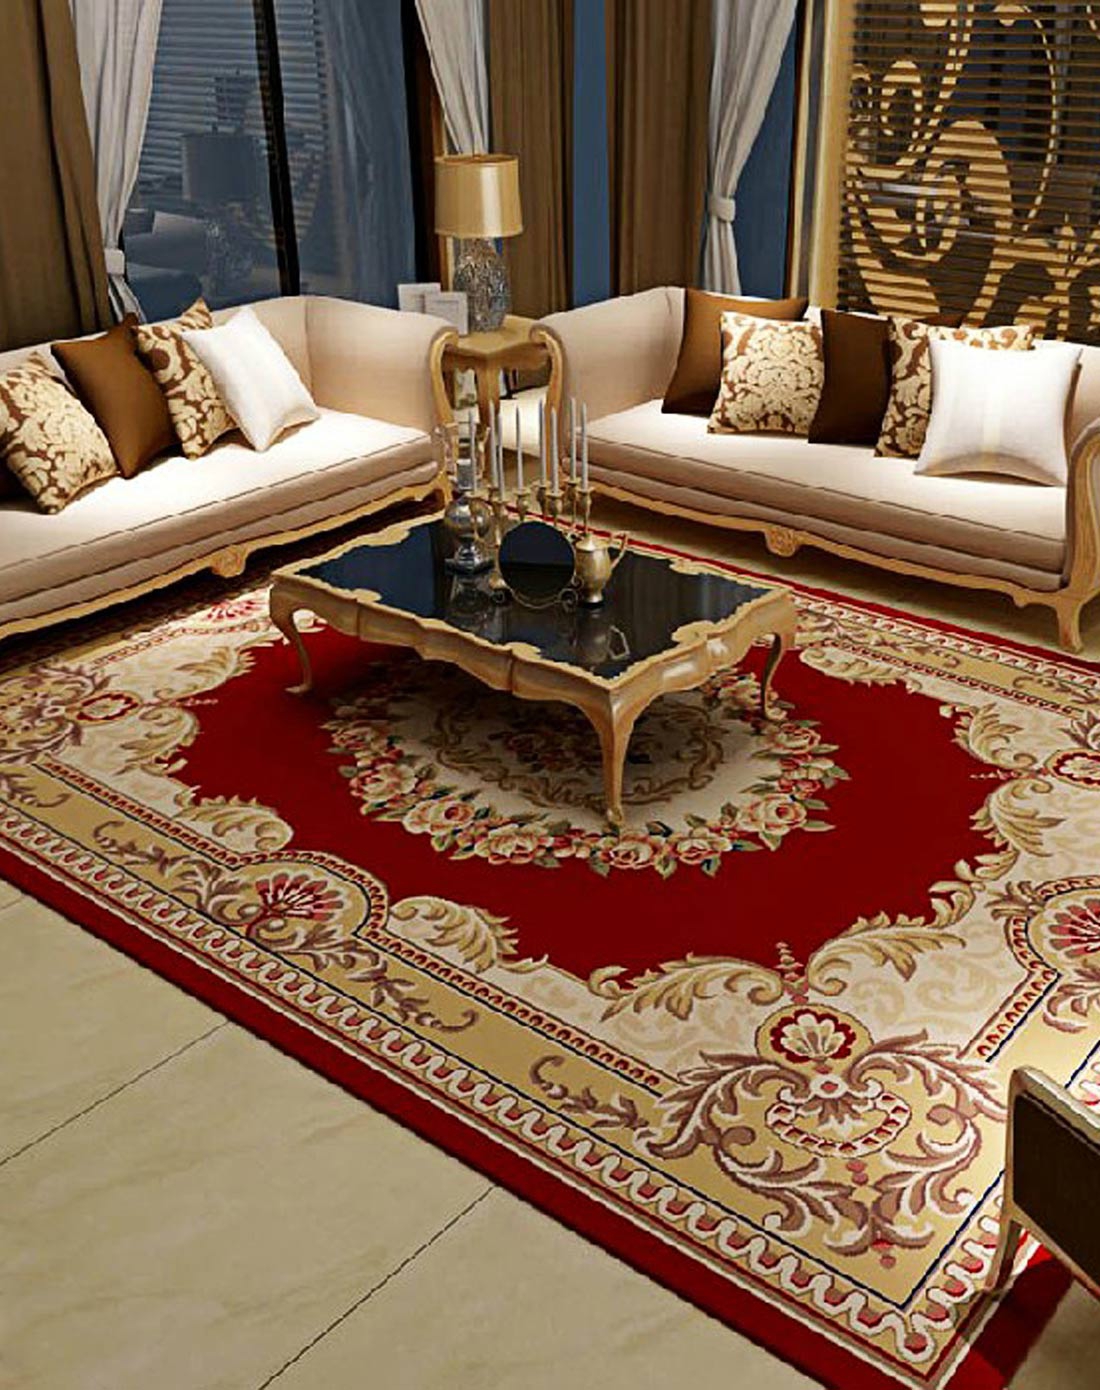 家用欧式新古典风格藏羊地毯效果图 – 设计本装修效果图